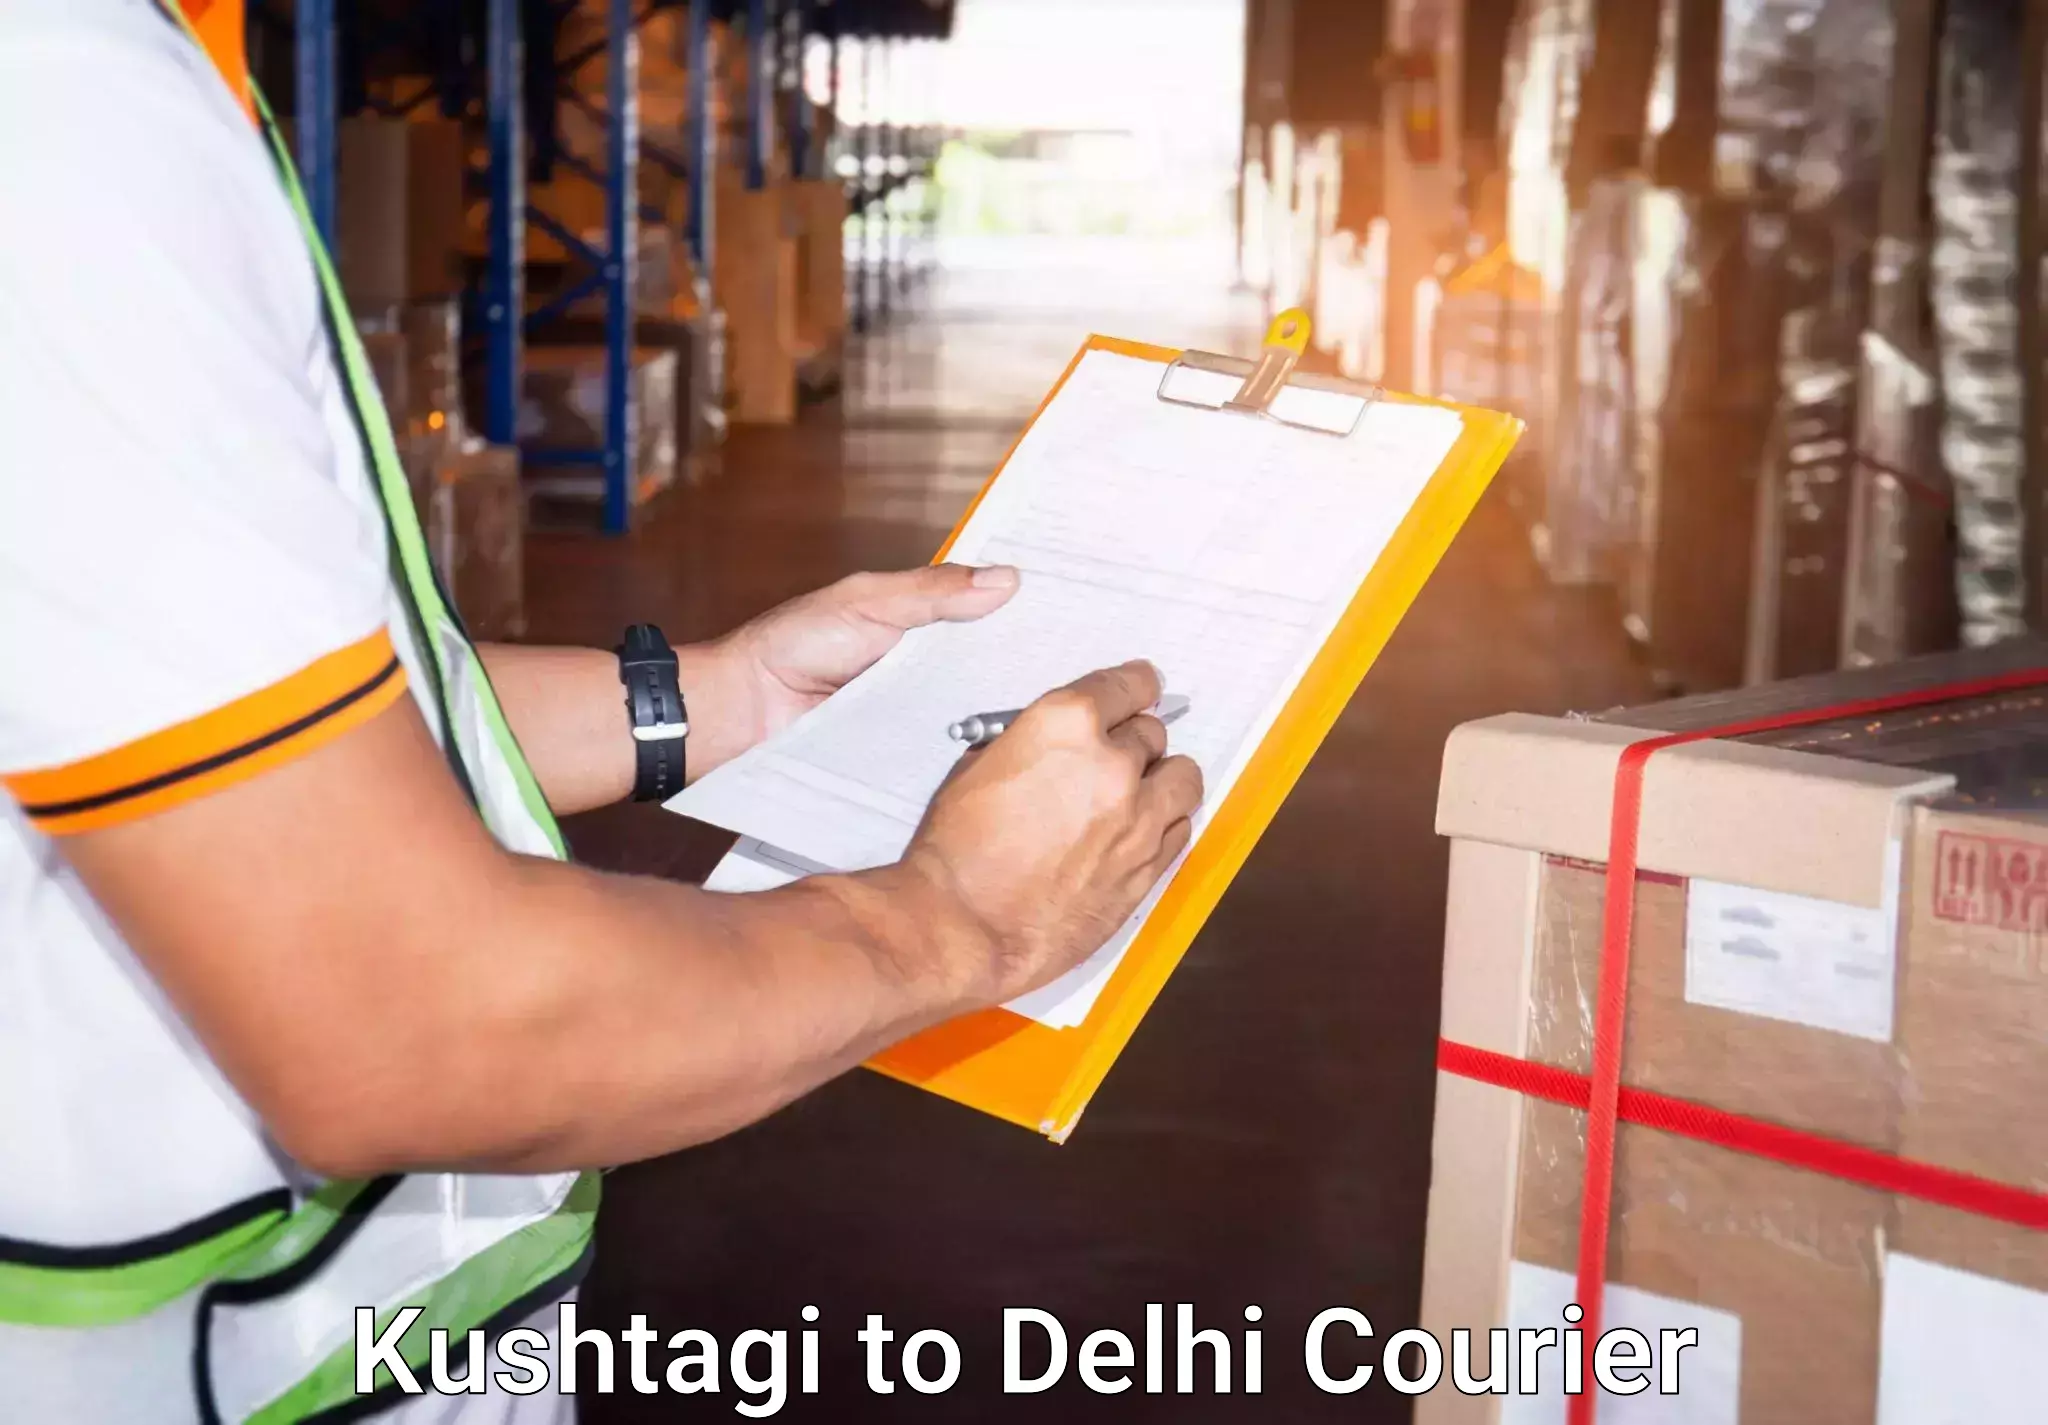 Luggage transport service Kushtagi to East Delhi